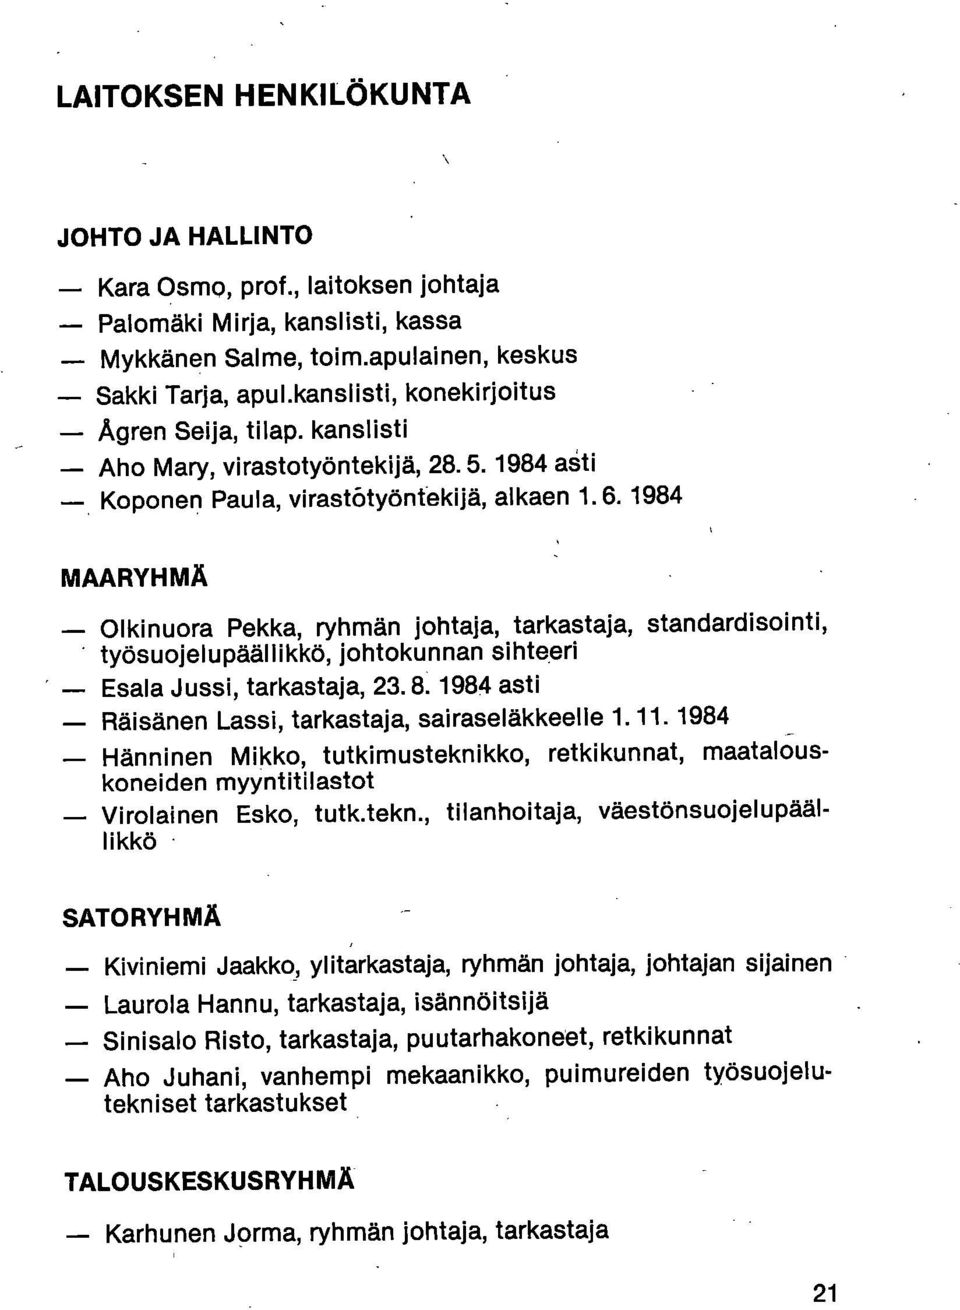 1984 MAARYHMÄ Olkinuora Pekka, ryhmän johtaja, tarkastaja, standardisointi, työsuojelupäällikkö, johtokunnan sihteeri Esala Jussi, tarkastaja, 23.8. 1984 asti Räisänen Lassi, tarkastaja, sairaseläkkeelle 1.